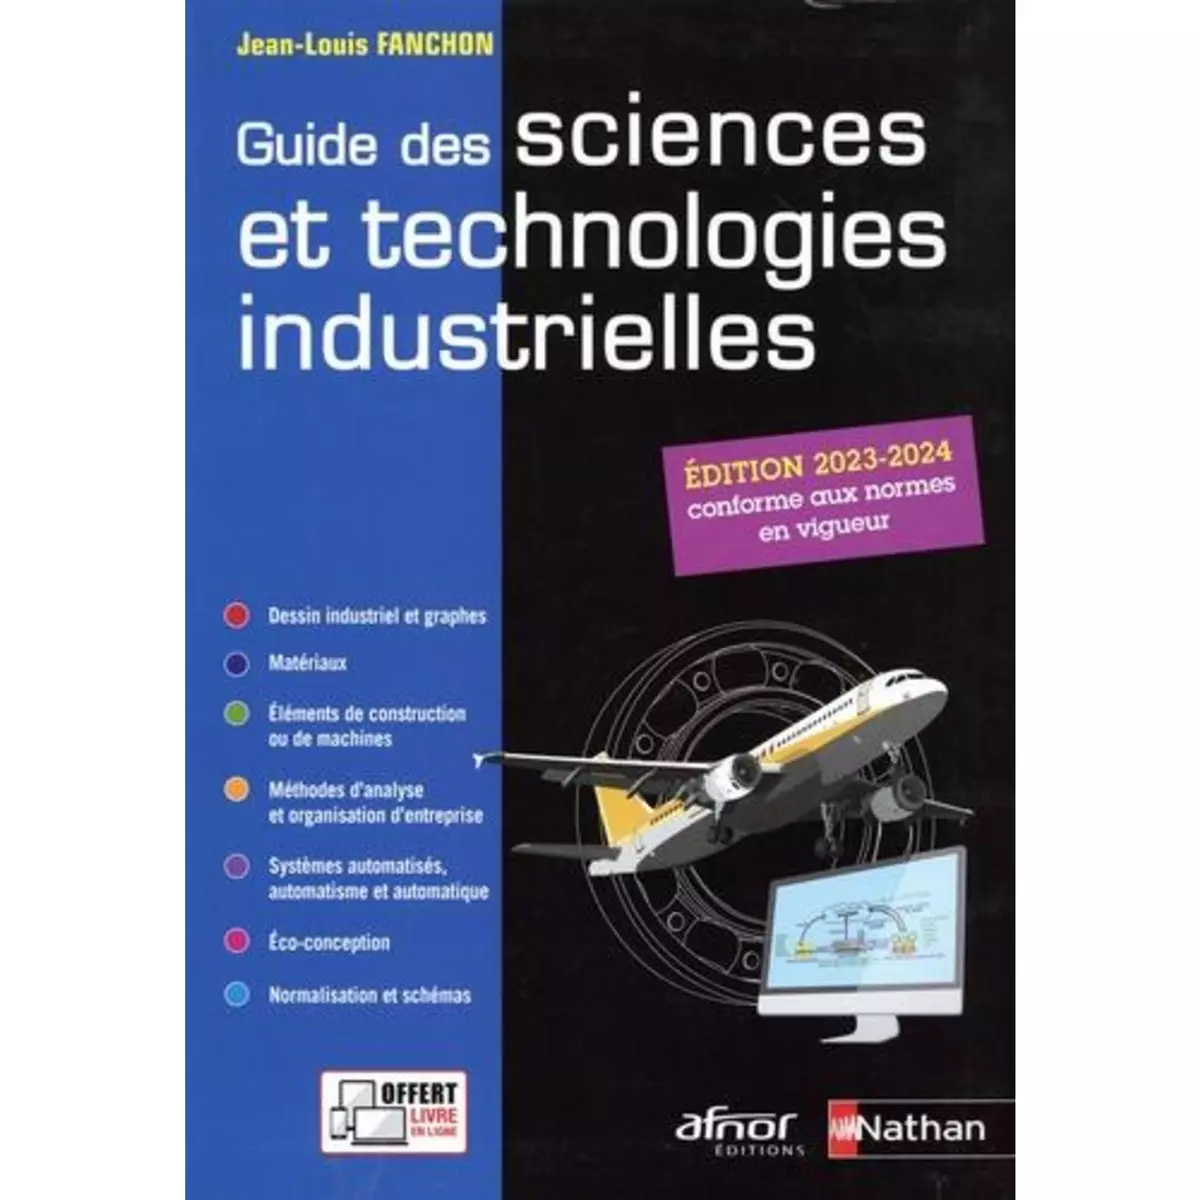  GUIDE DES SCIENCES ET TECHNOLOGIES INDUSTRIELLES. EDITION 2023-2024, Fanchon Jean-Louis